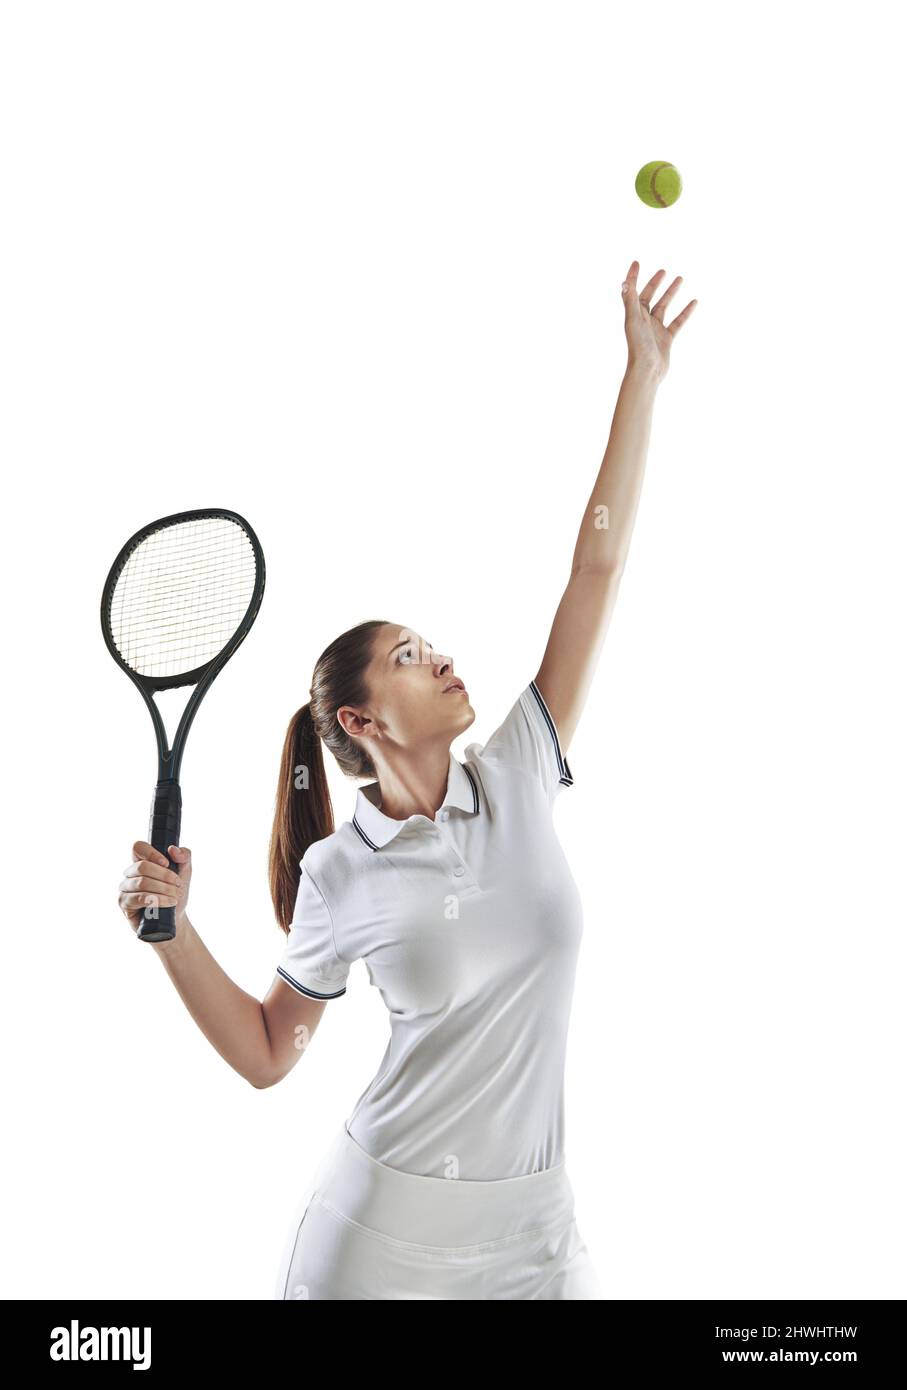 Restez calme et servez un as. Photo en studio d'une joueuse de tennis féminine se préparer à servir le ballon. Banque D'Images